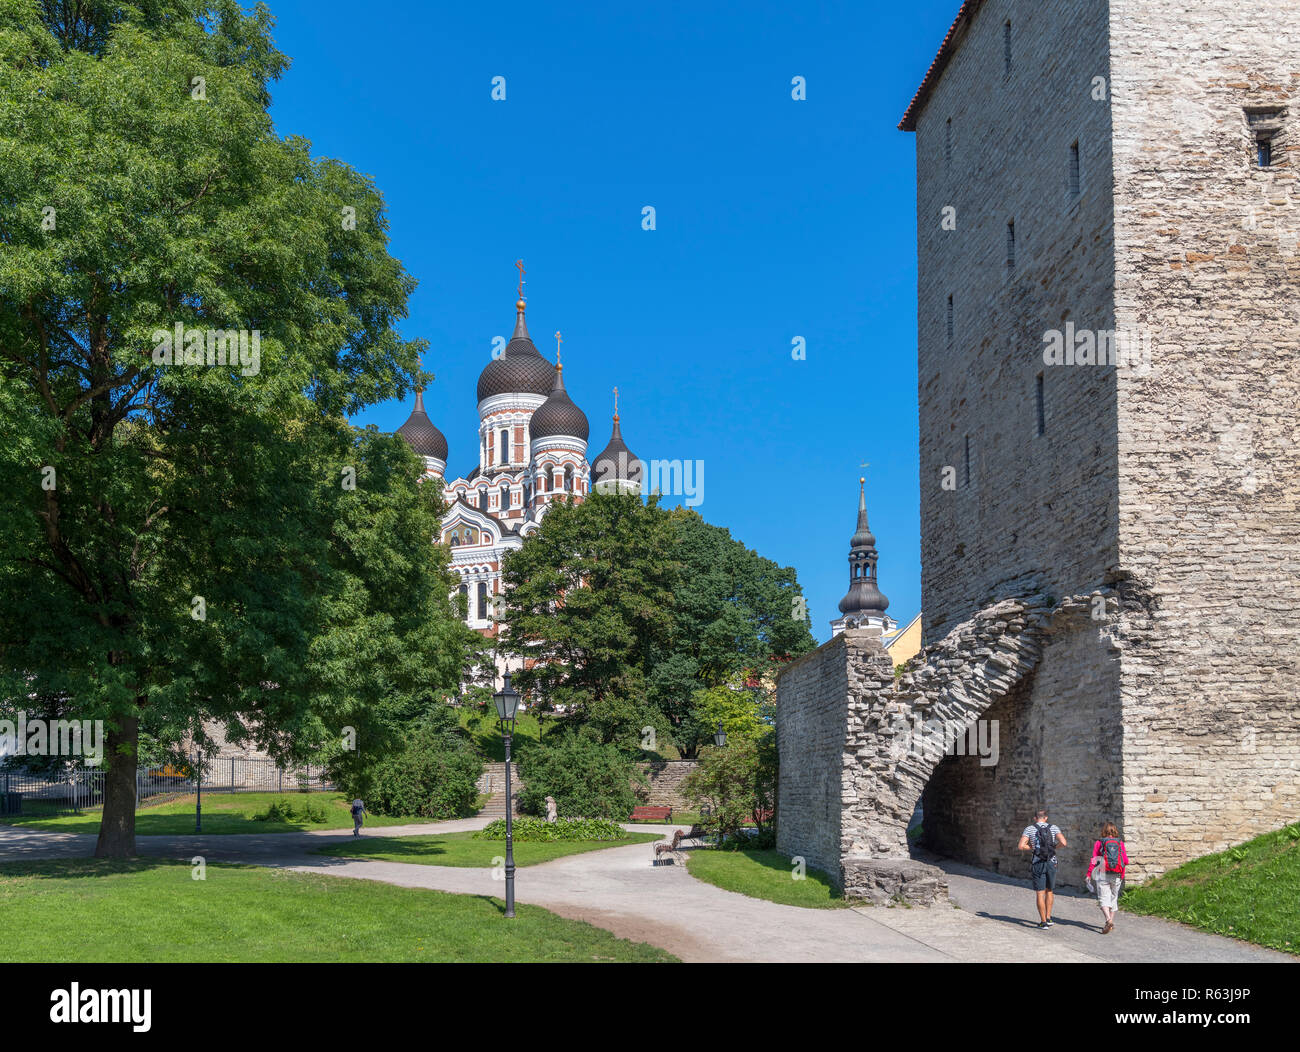 Harjumägi park looking towards Alexander Nevsky Cathedral with Maiden Tower to the right, Old Town (Vanalinn), Tallinn, Estonia Stock Photo